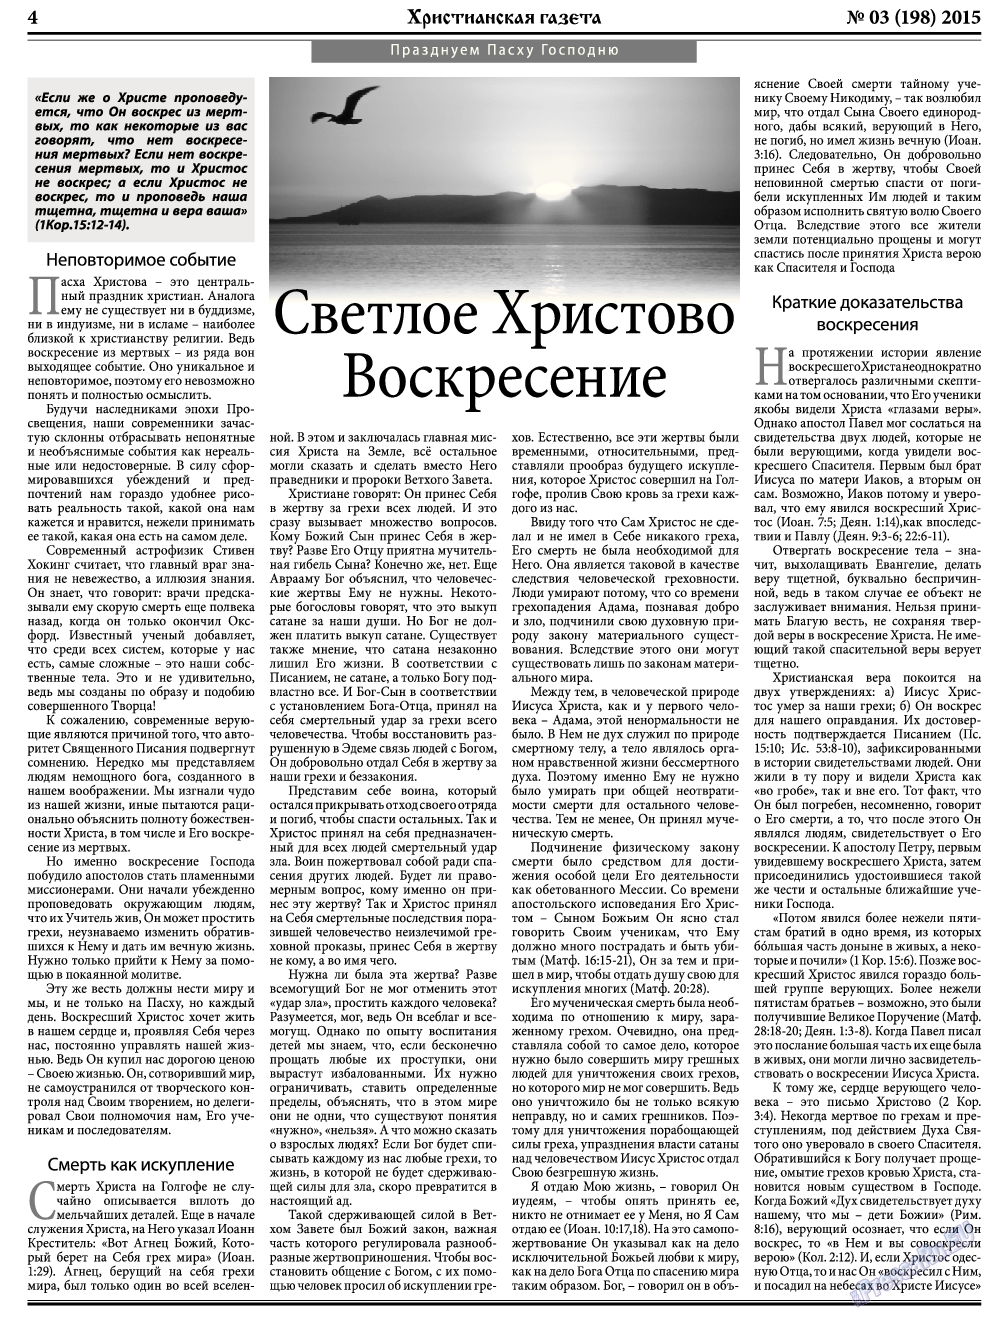 Христианская газета, газета. 2015 №3 стр.4